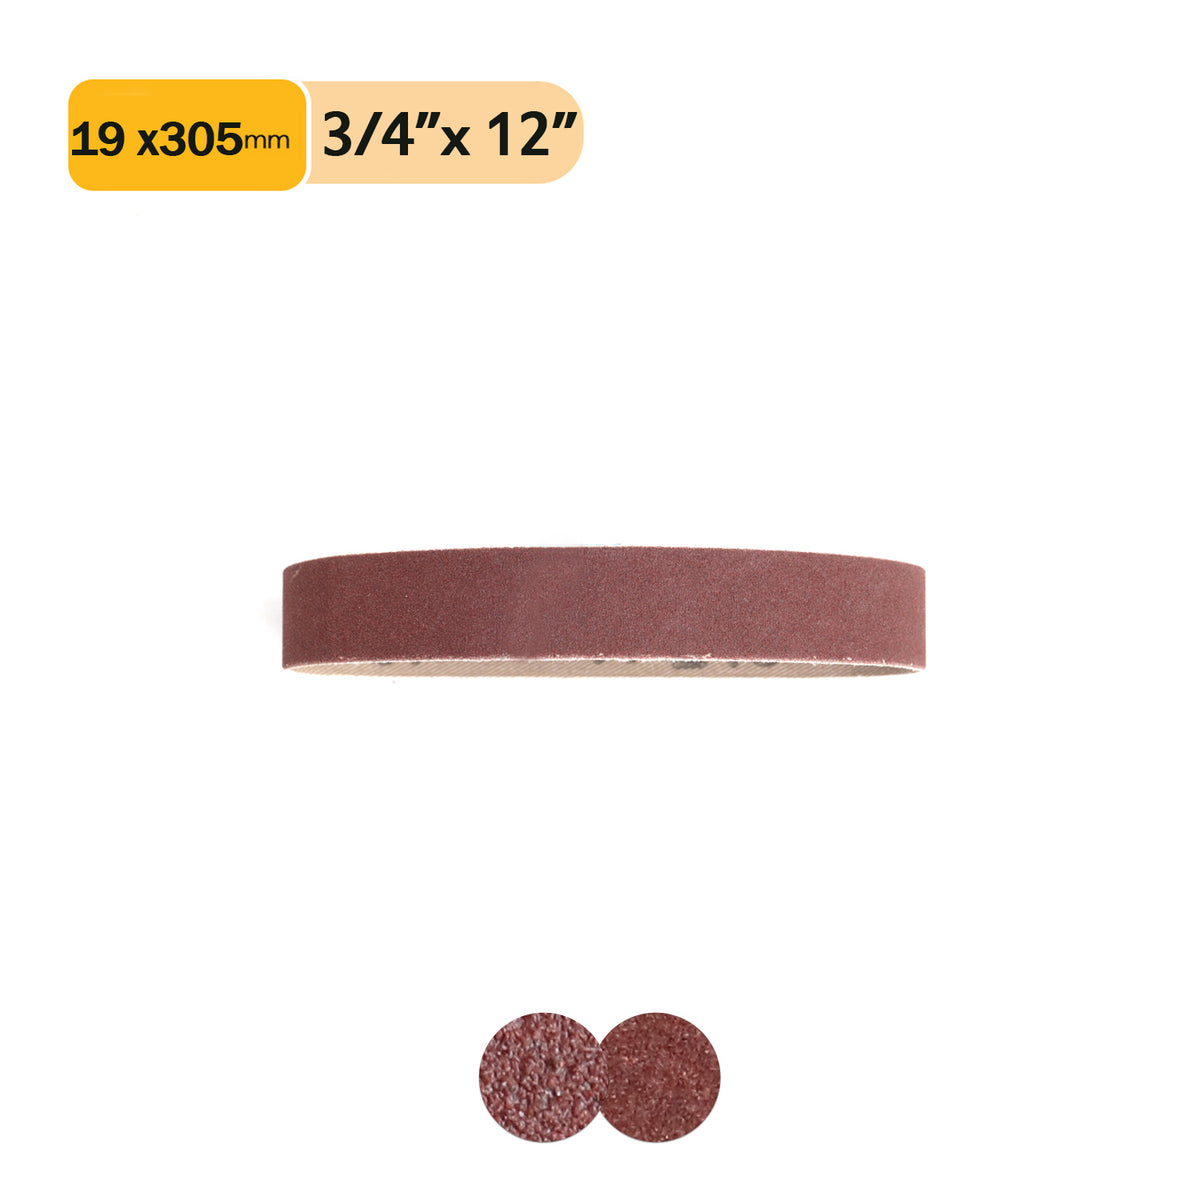 3/4" x 12" (19x305mm) Aluminum Oxide A/O Sanding Belts , 1 PC